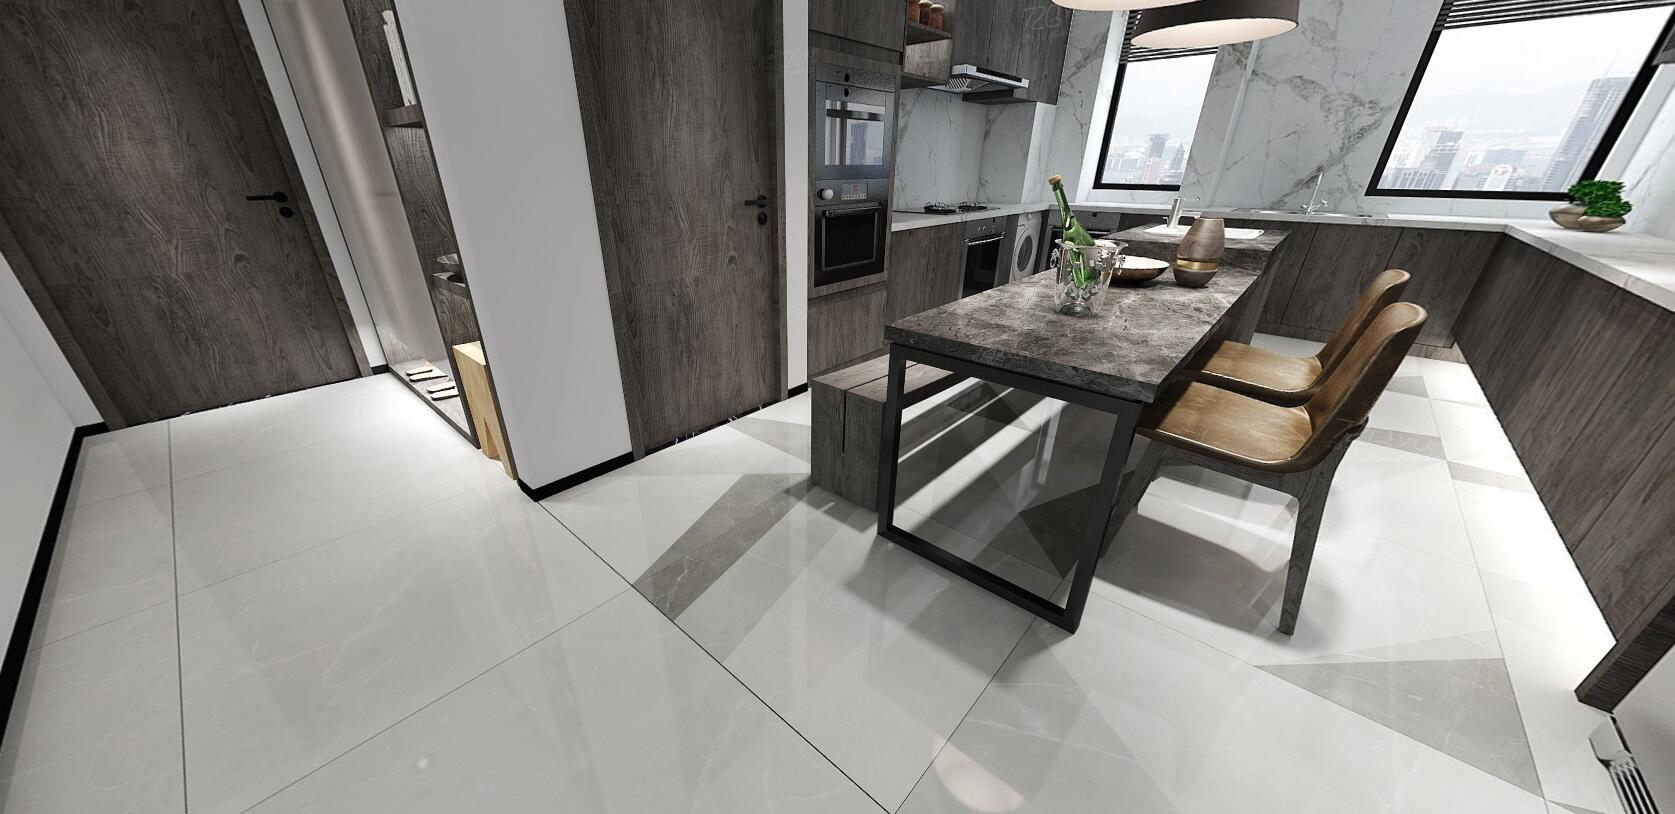 大理石瓷砖阿玛尼-浅灰IPGS90046餐厅空间效果图3